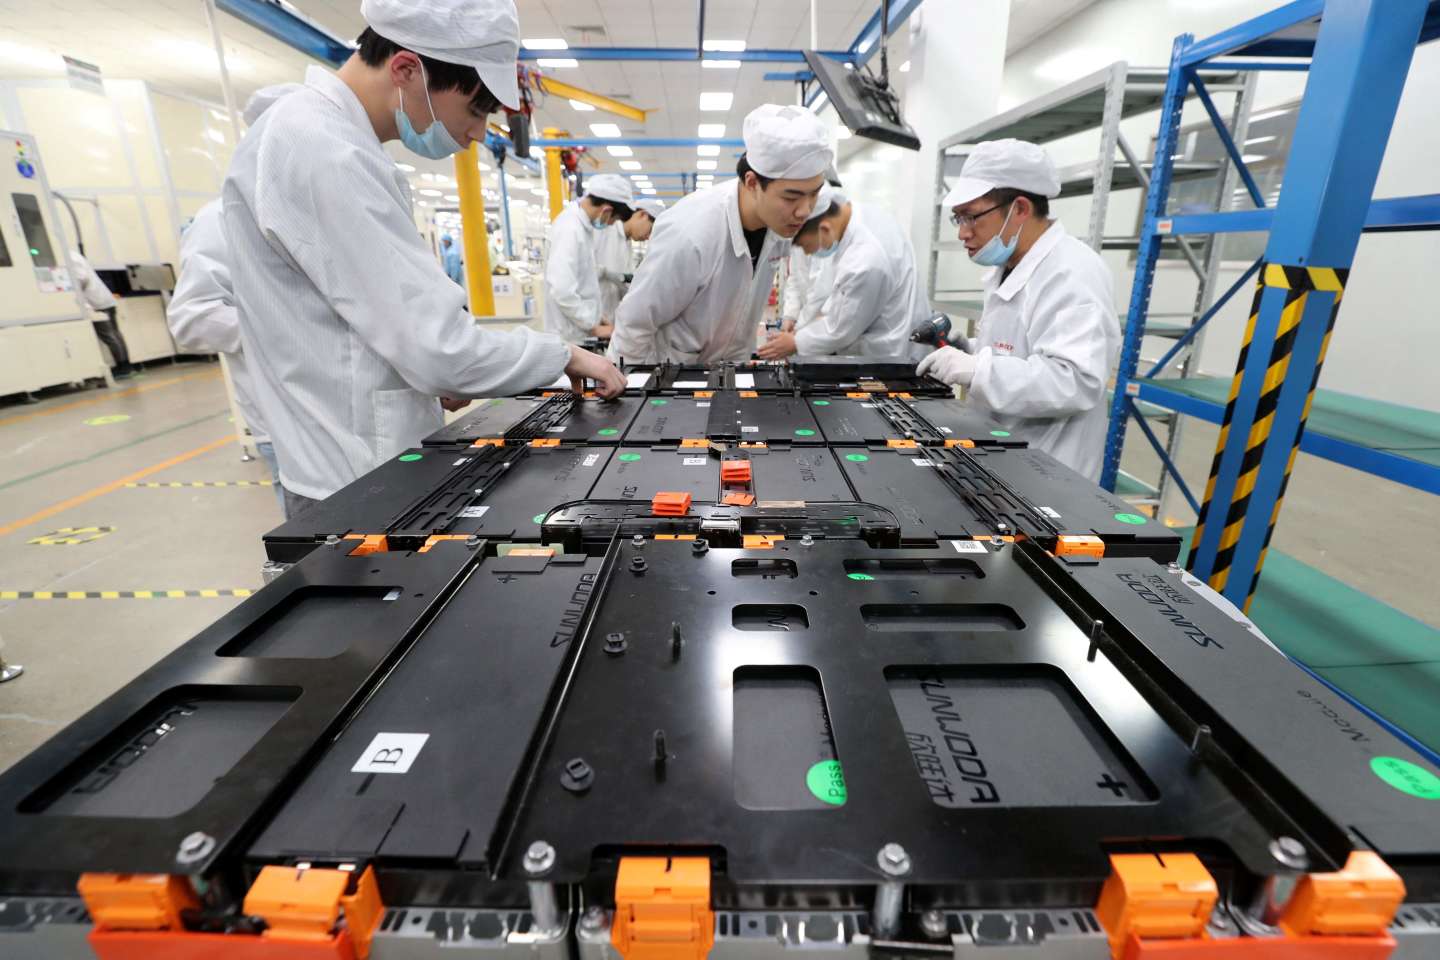 Batteries : « L’Europe est dépendante de la Chine non seulement pour les matières premières, mais aussi pour les produits semi-finis »